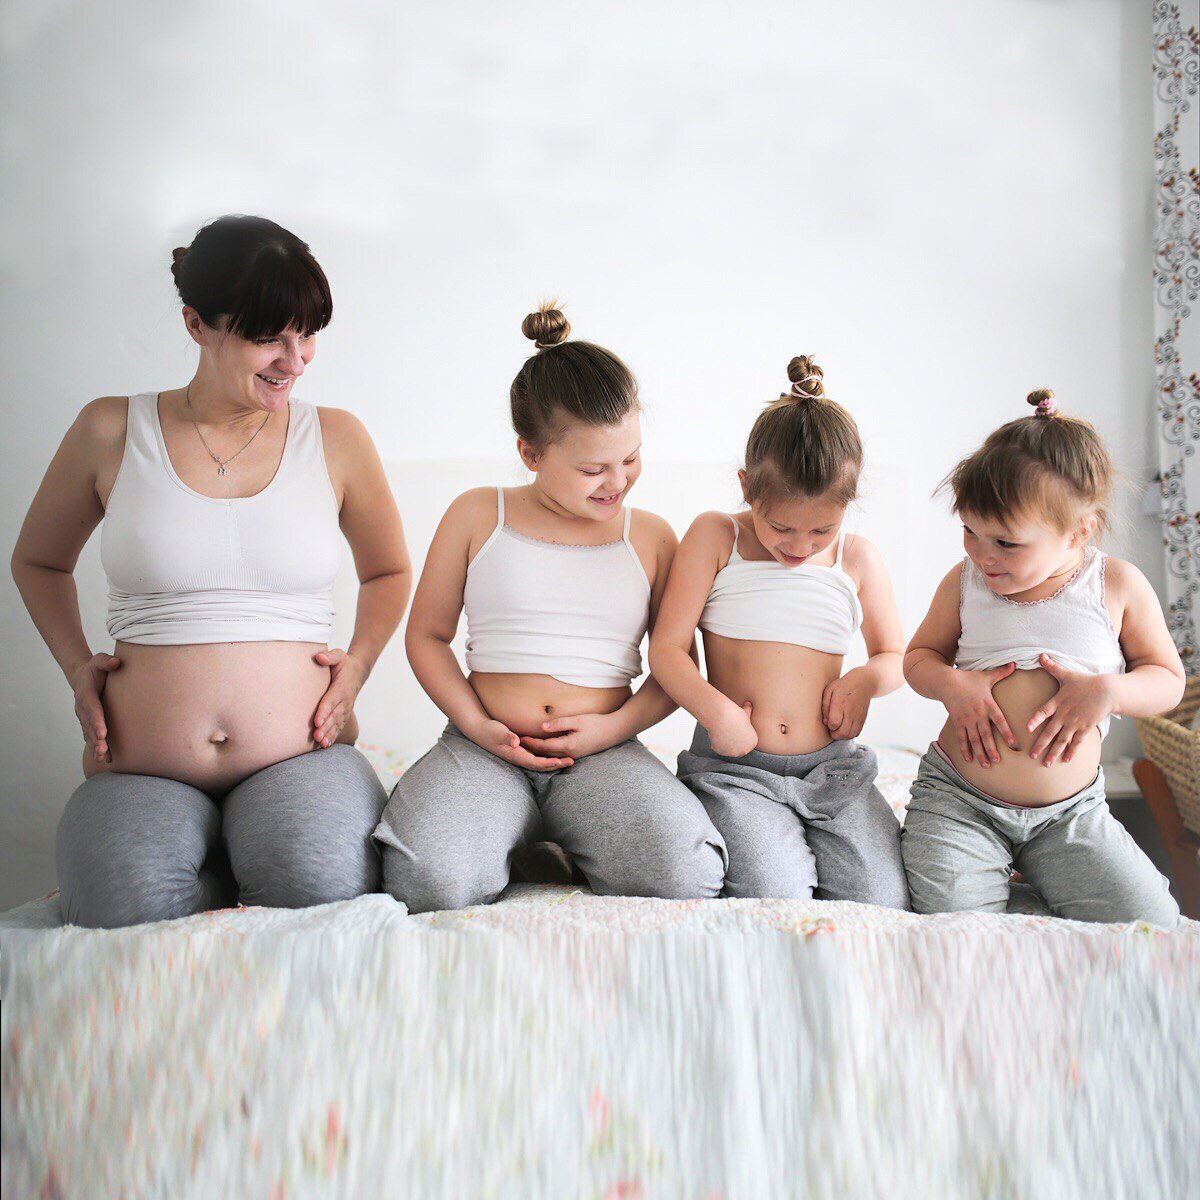 Рождения четверых детей. Фото беременных мамочек групповое.